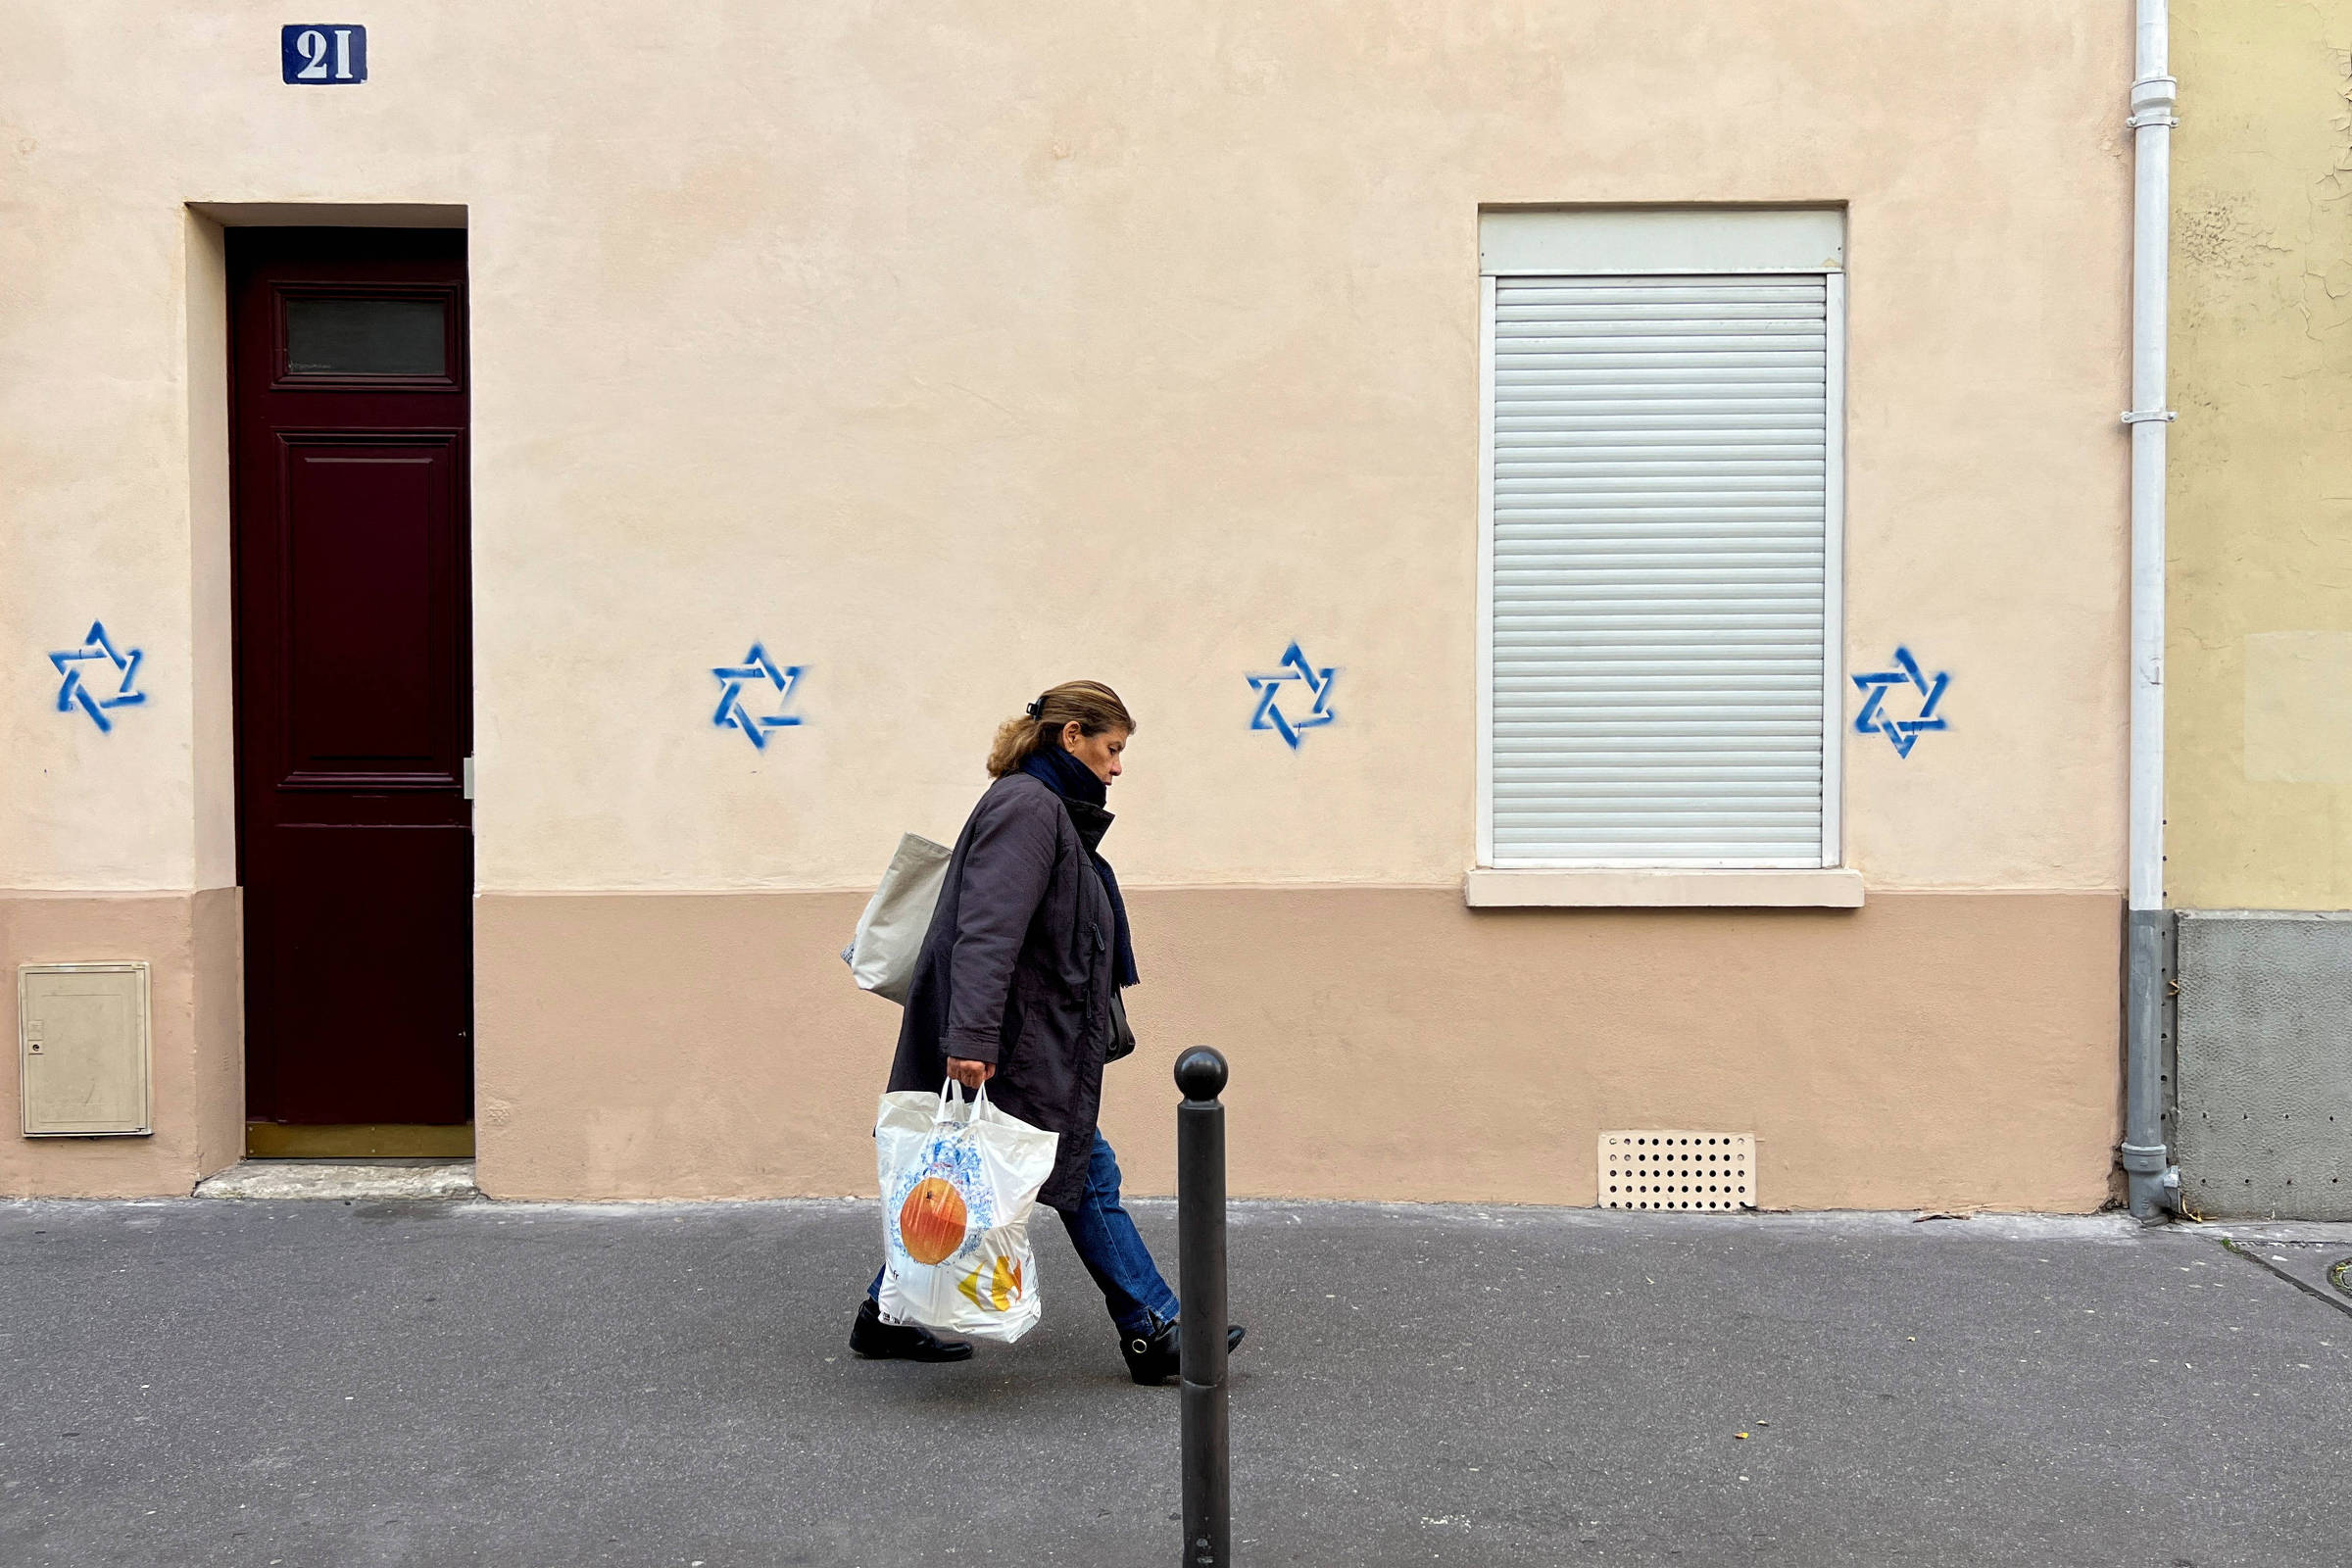 França. Mais de uma centena de atos antissemitas desde o início do